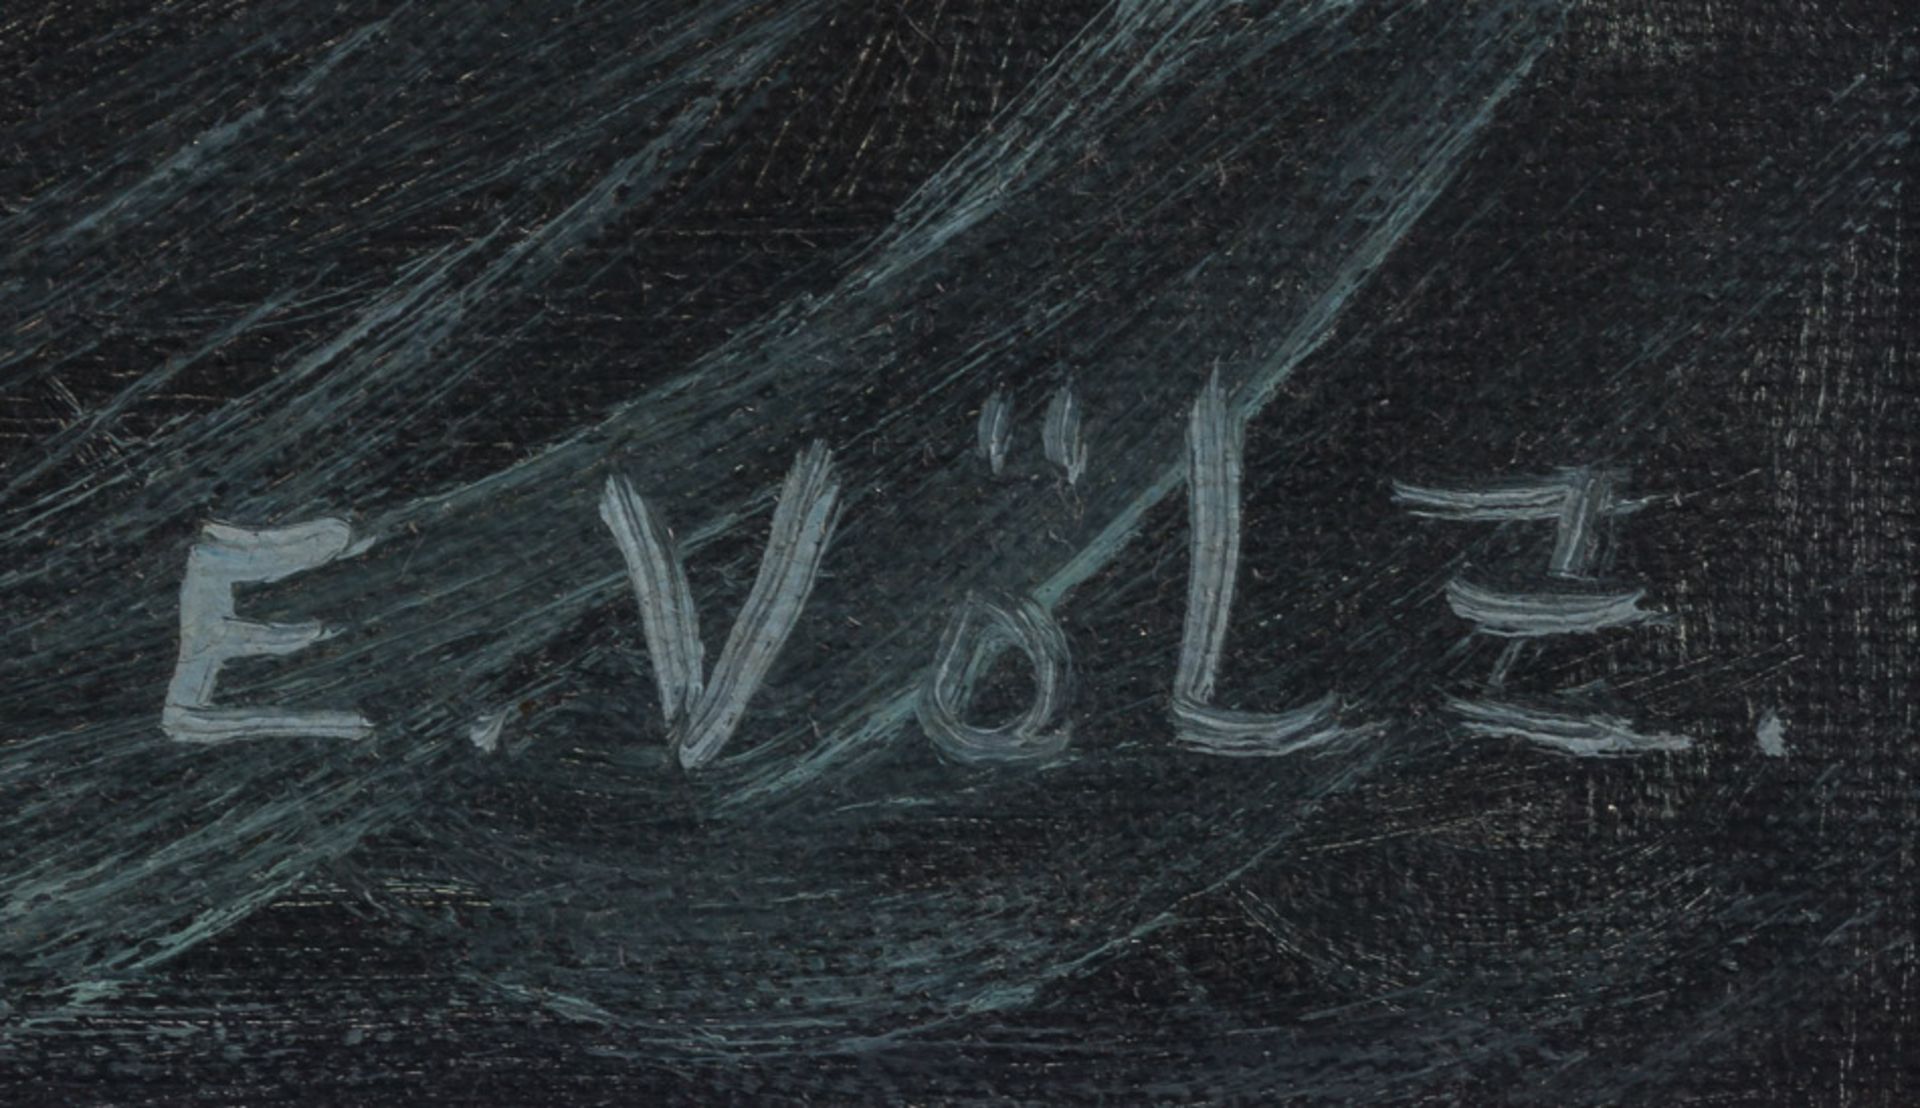 Edmund Völz (1902-1972)"Segelschiff auf Hoher See"
Gemälde Öl/Leinwand, 69 cm x 79 cm, gerahmt, - Image 4 of 5